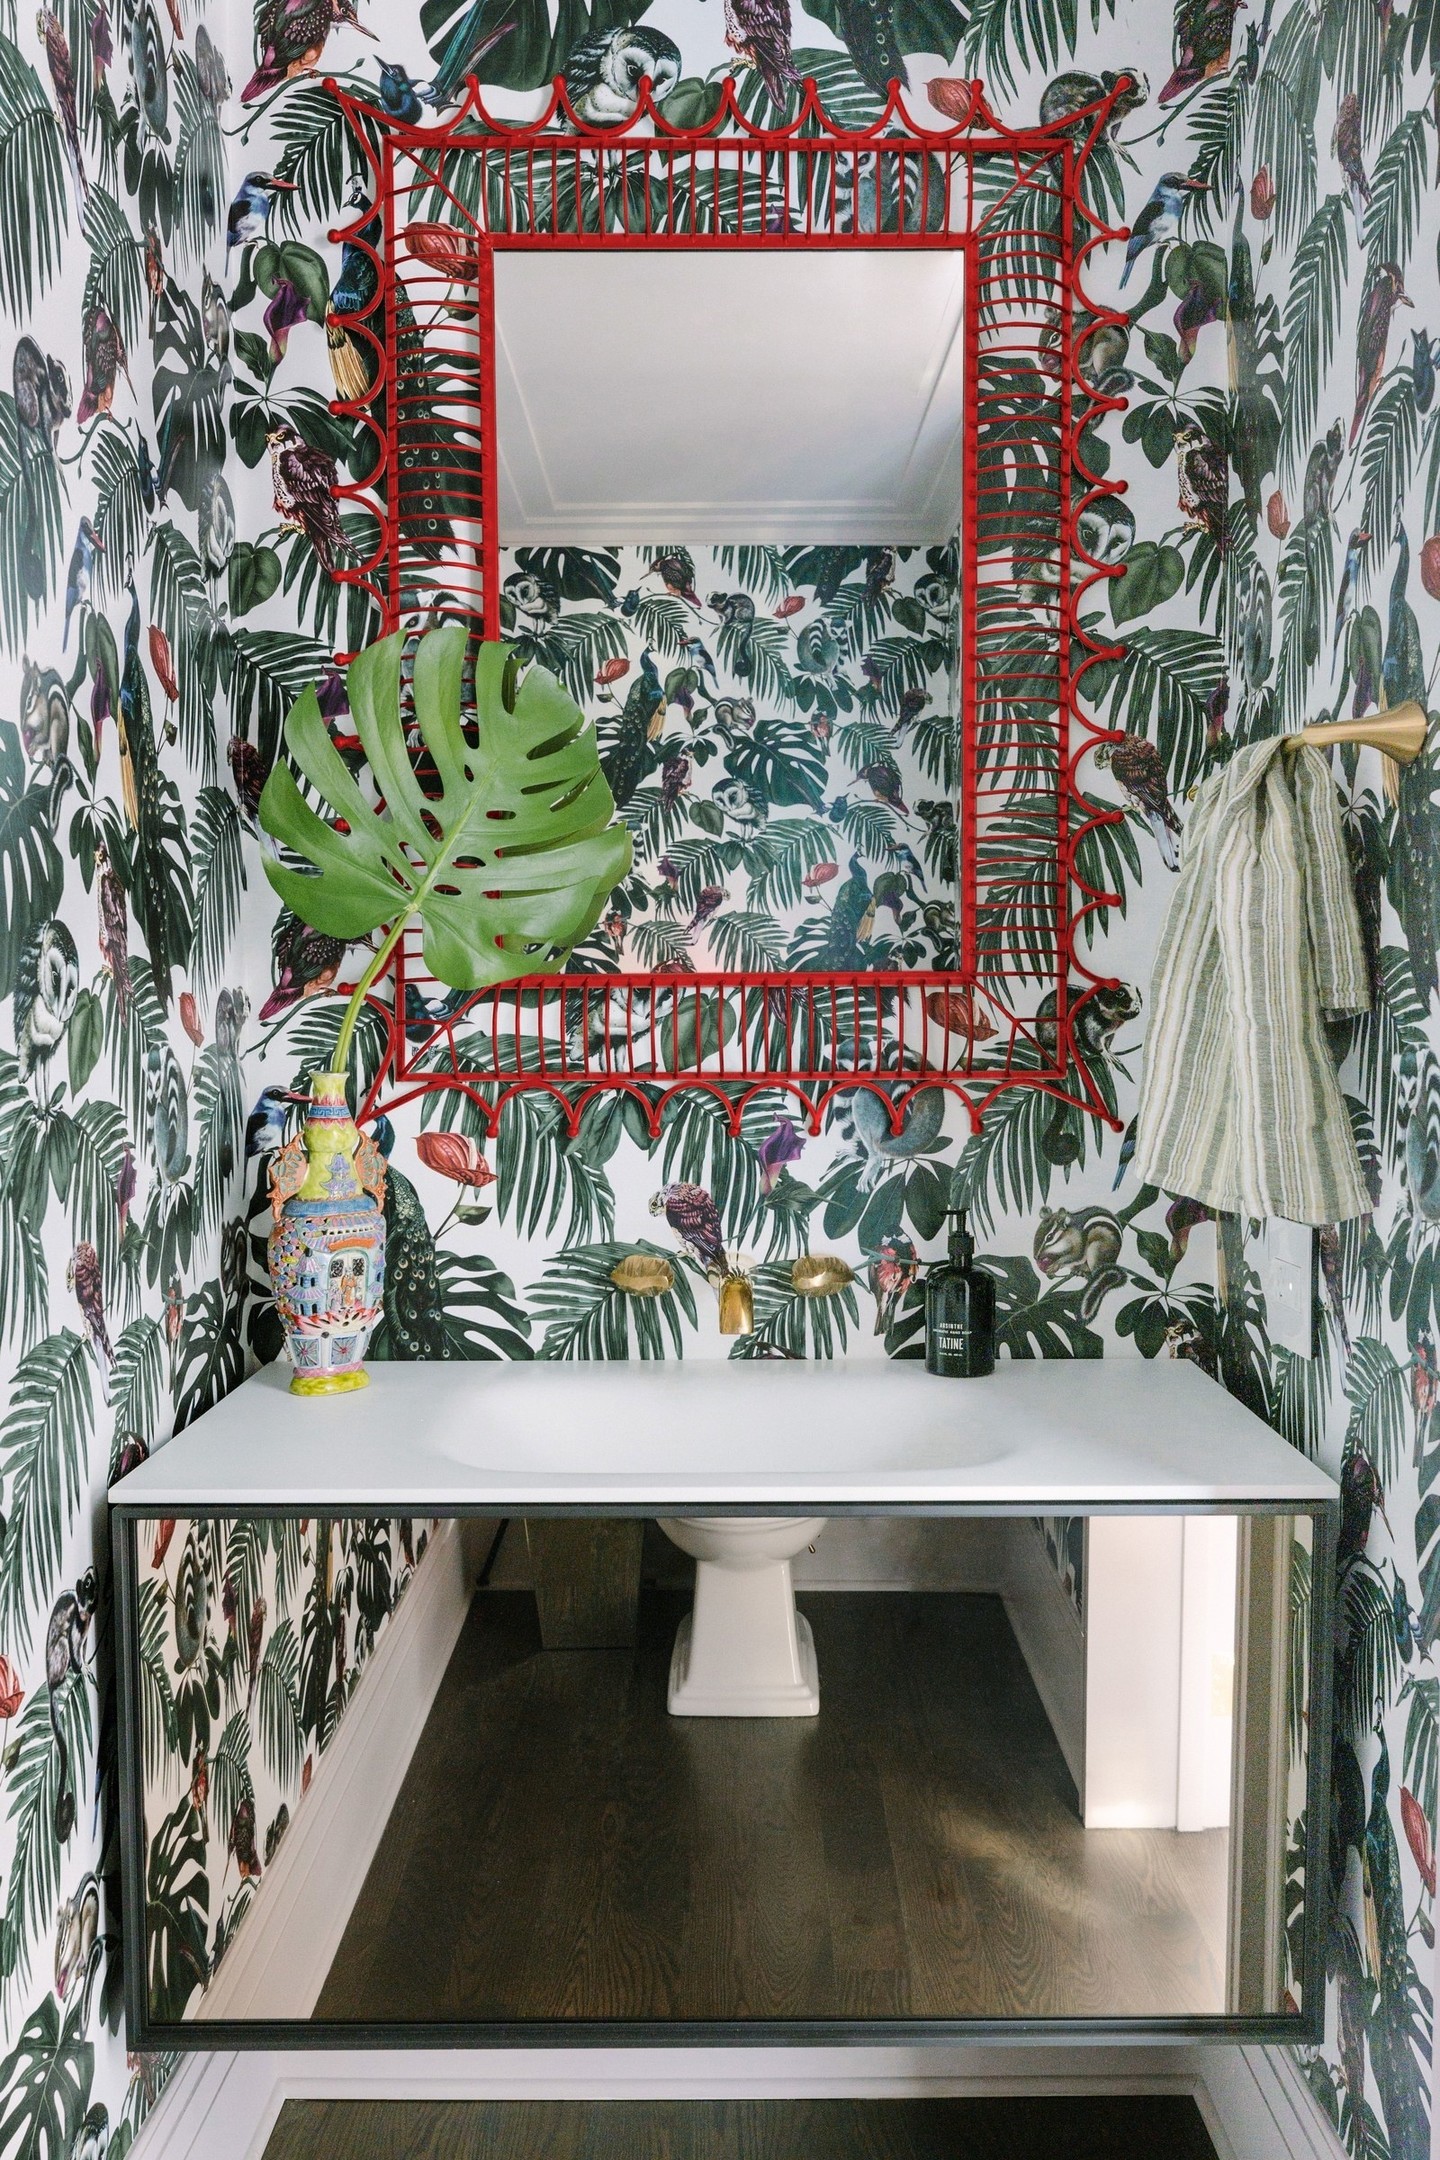 Phòng tắm nằm trong căn hộ ở thành phố Chicago (Hoa Kỳ) do CAK Studio thiết kế. Bằng việc lựa chọn giấy dán tường cho đến lọ hoa trang trí thì tấm gương với viền khung màu đỏ cũng là điểm nhấn độc đáo cho không gian thêm quyến rũ.